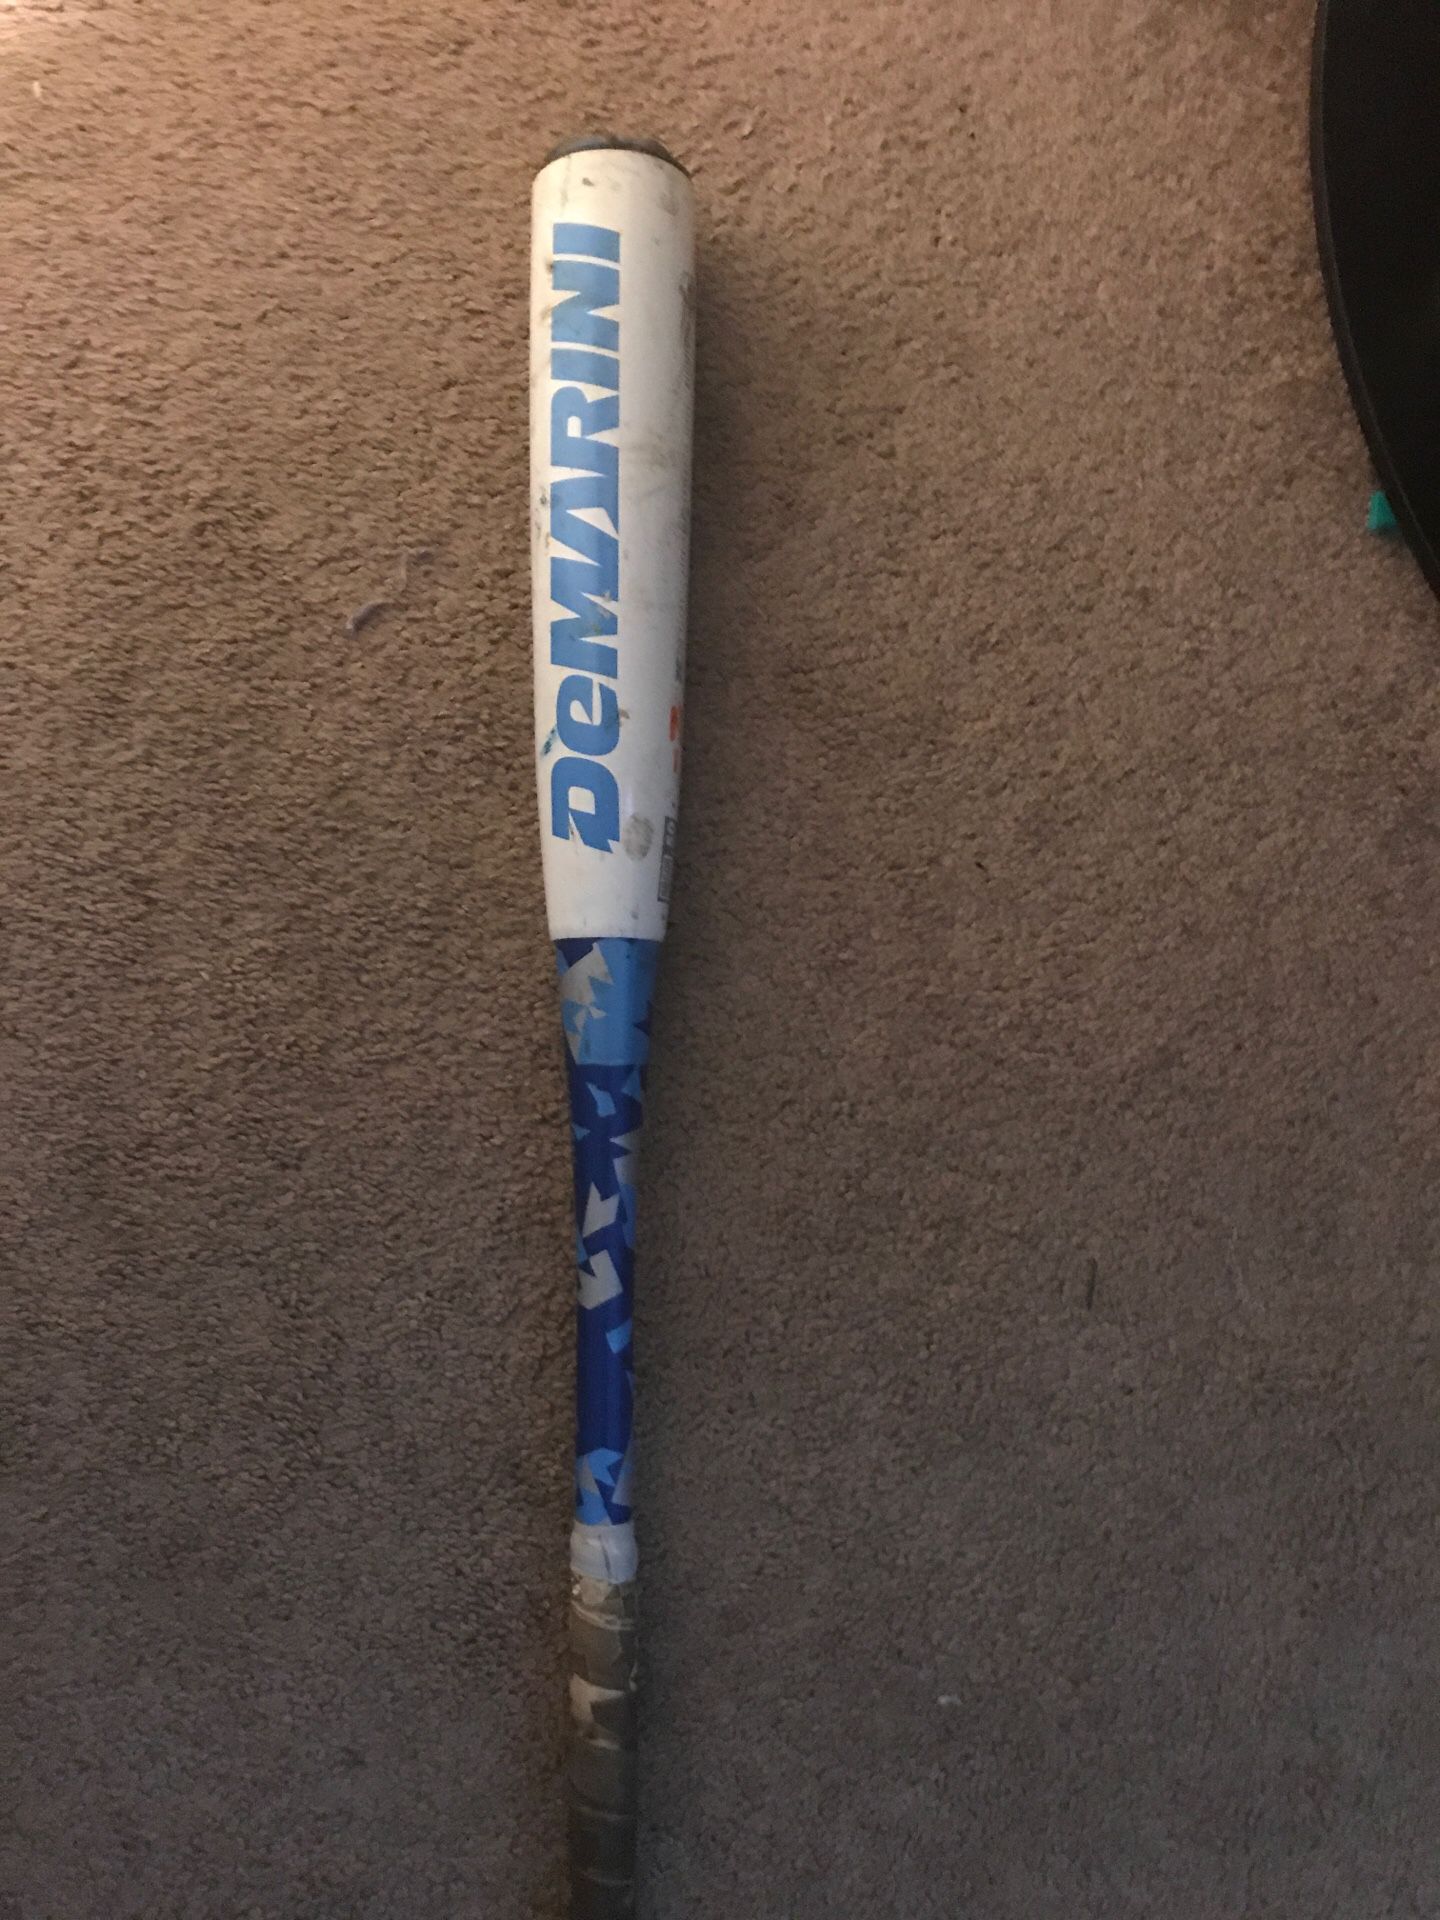 Demarini and pinacle sports baseball bats